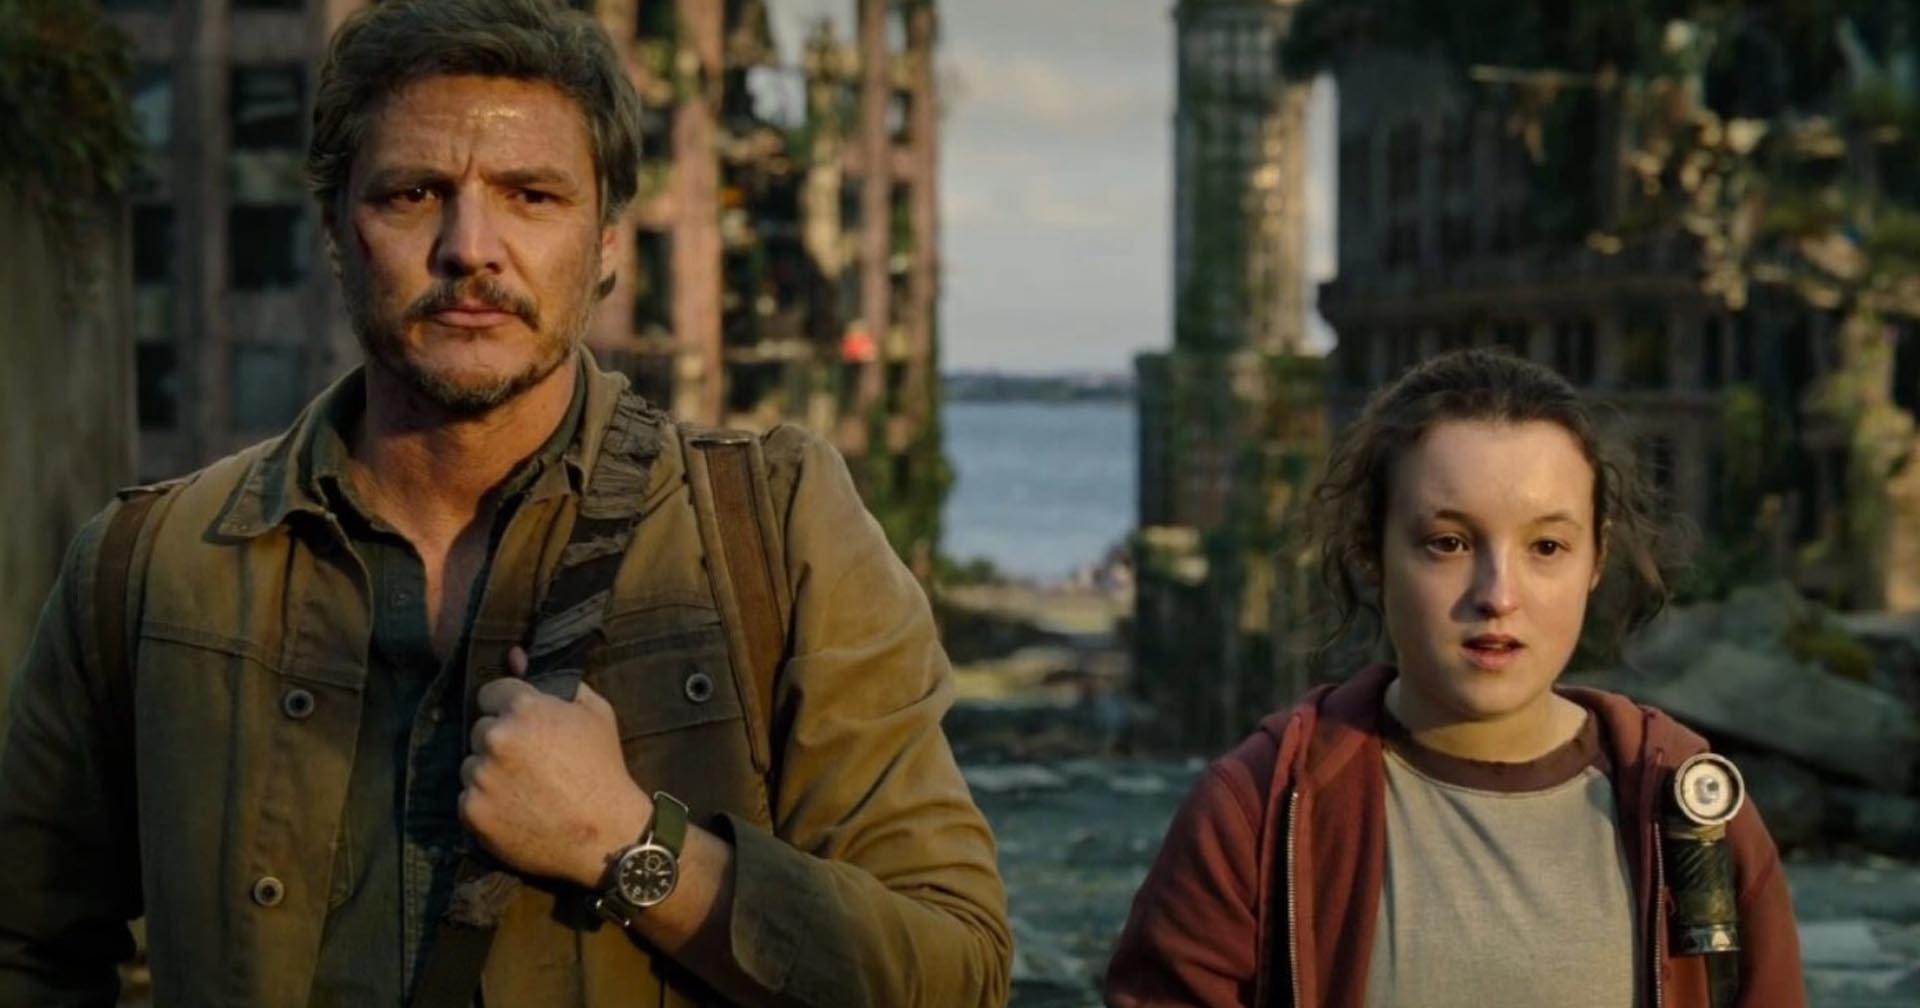 โชว์รันเนอร์ประจำซีรีส์ ‘The Last of Us’ เผย ซีซัน 2 อาจมีบางเรื่องทำให้ผู้ชมเดือด!